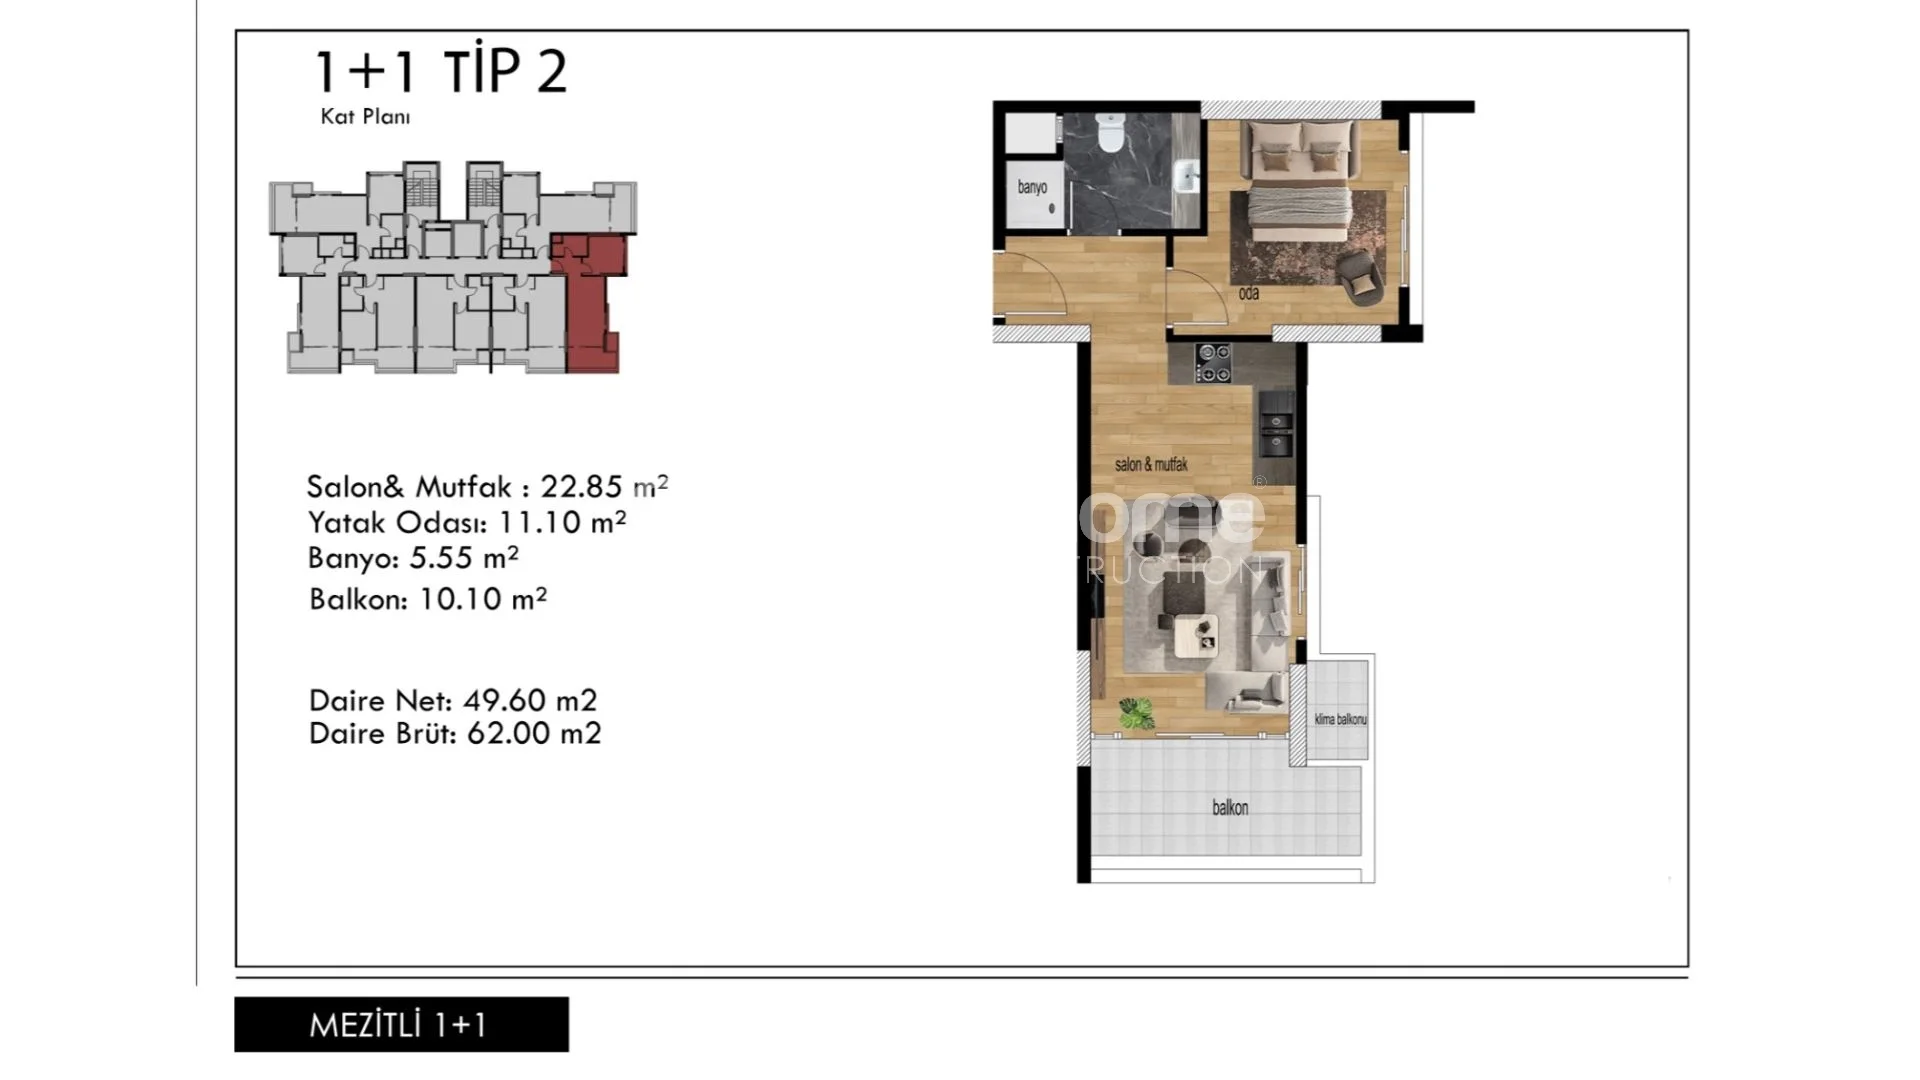 Prekrasni apartmani modernog dizajna u Mezitli, Mersin plan - 24